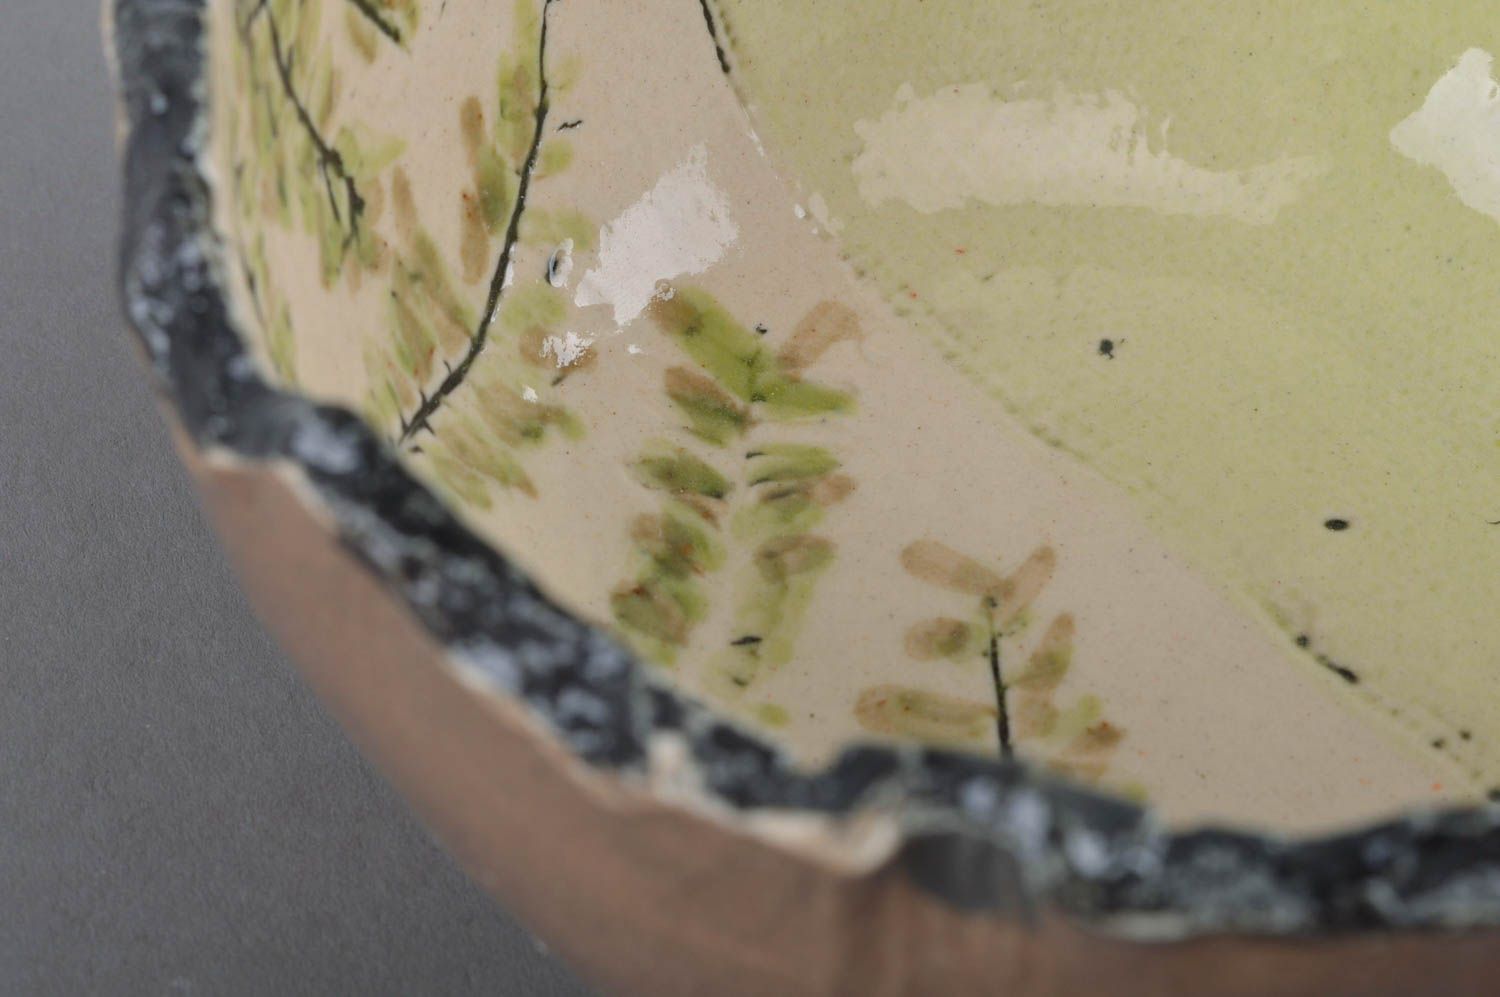 Миска для салата из фарфора расписанная цветной глазурью посуда ручной работы фото 2